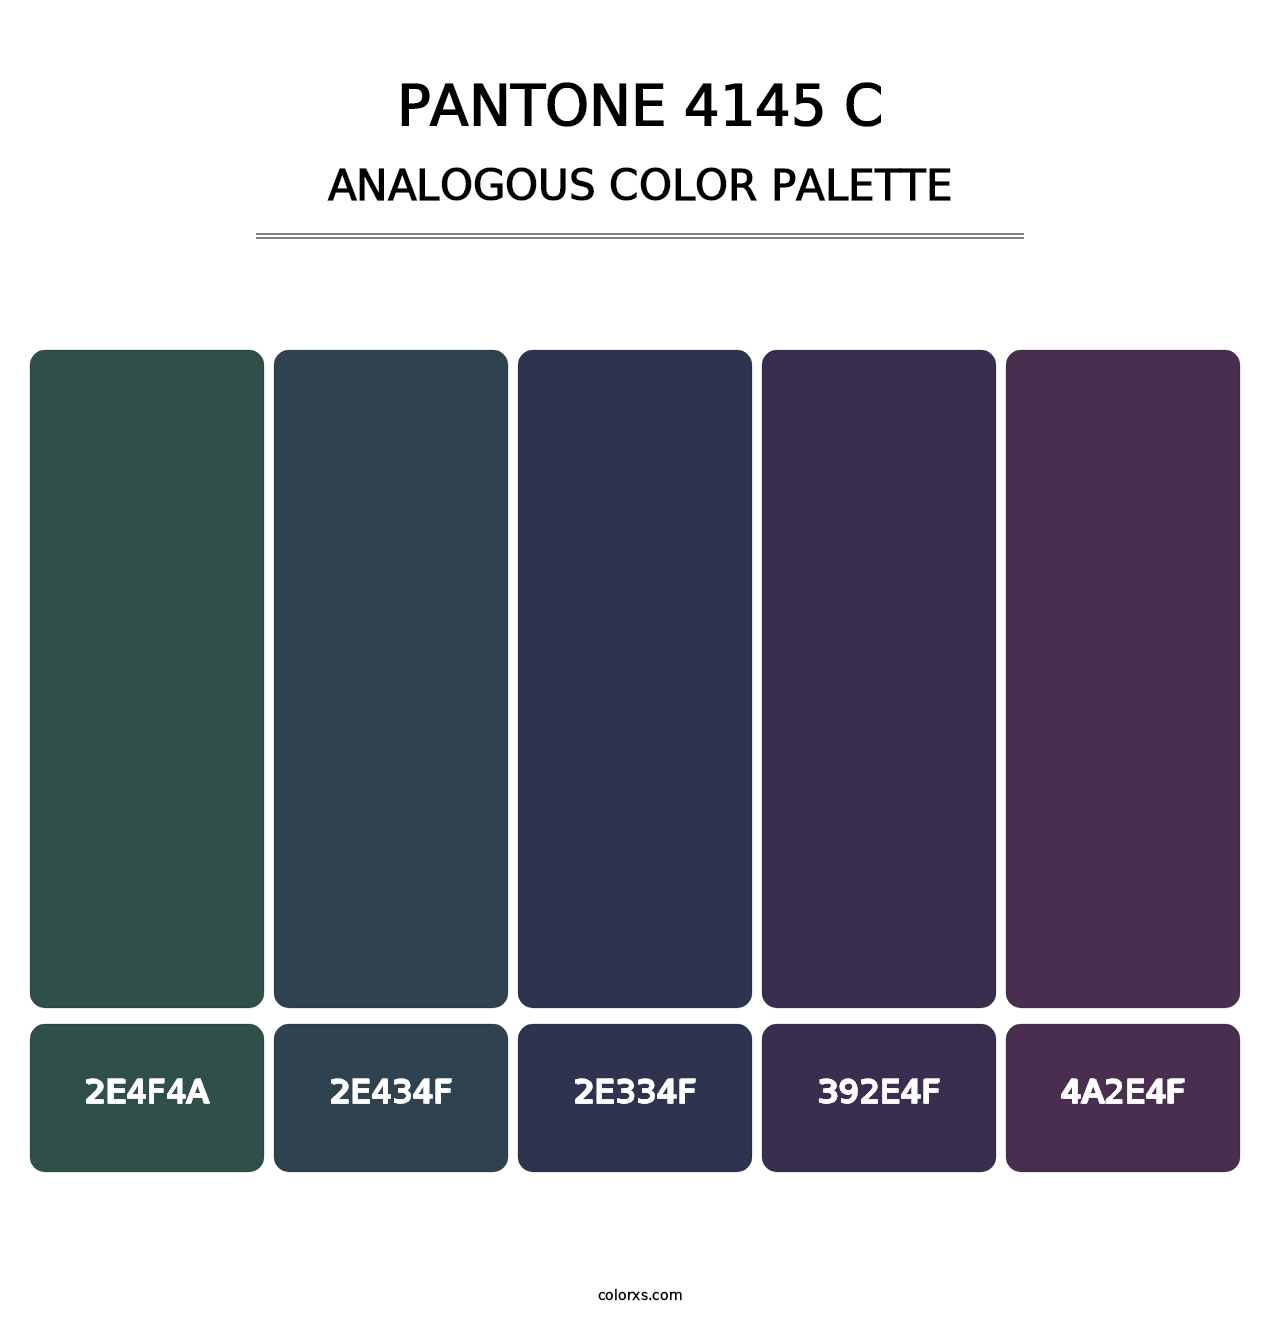 PANTONE 4145 C - Analogous Color Palette